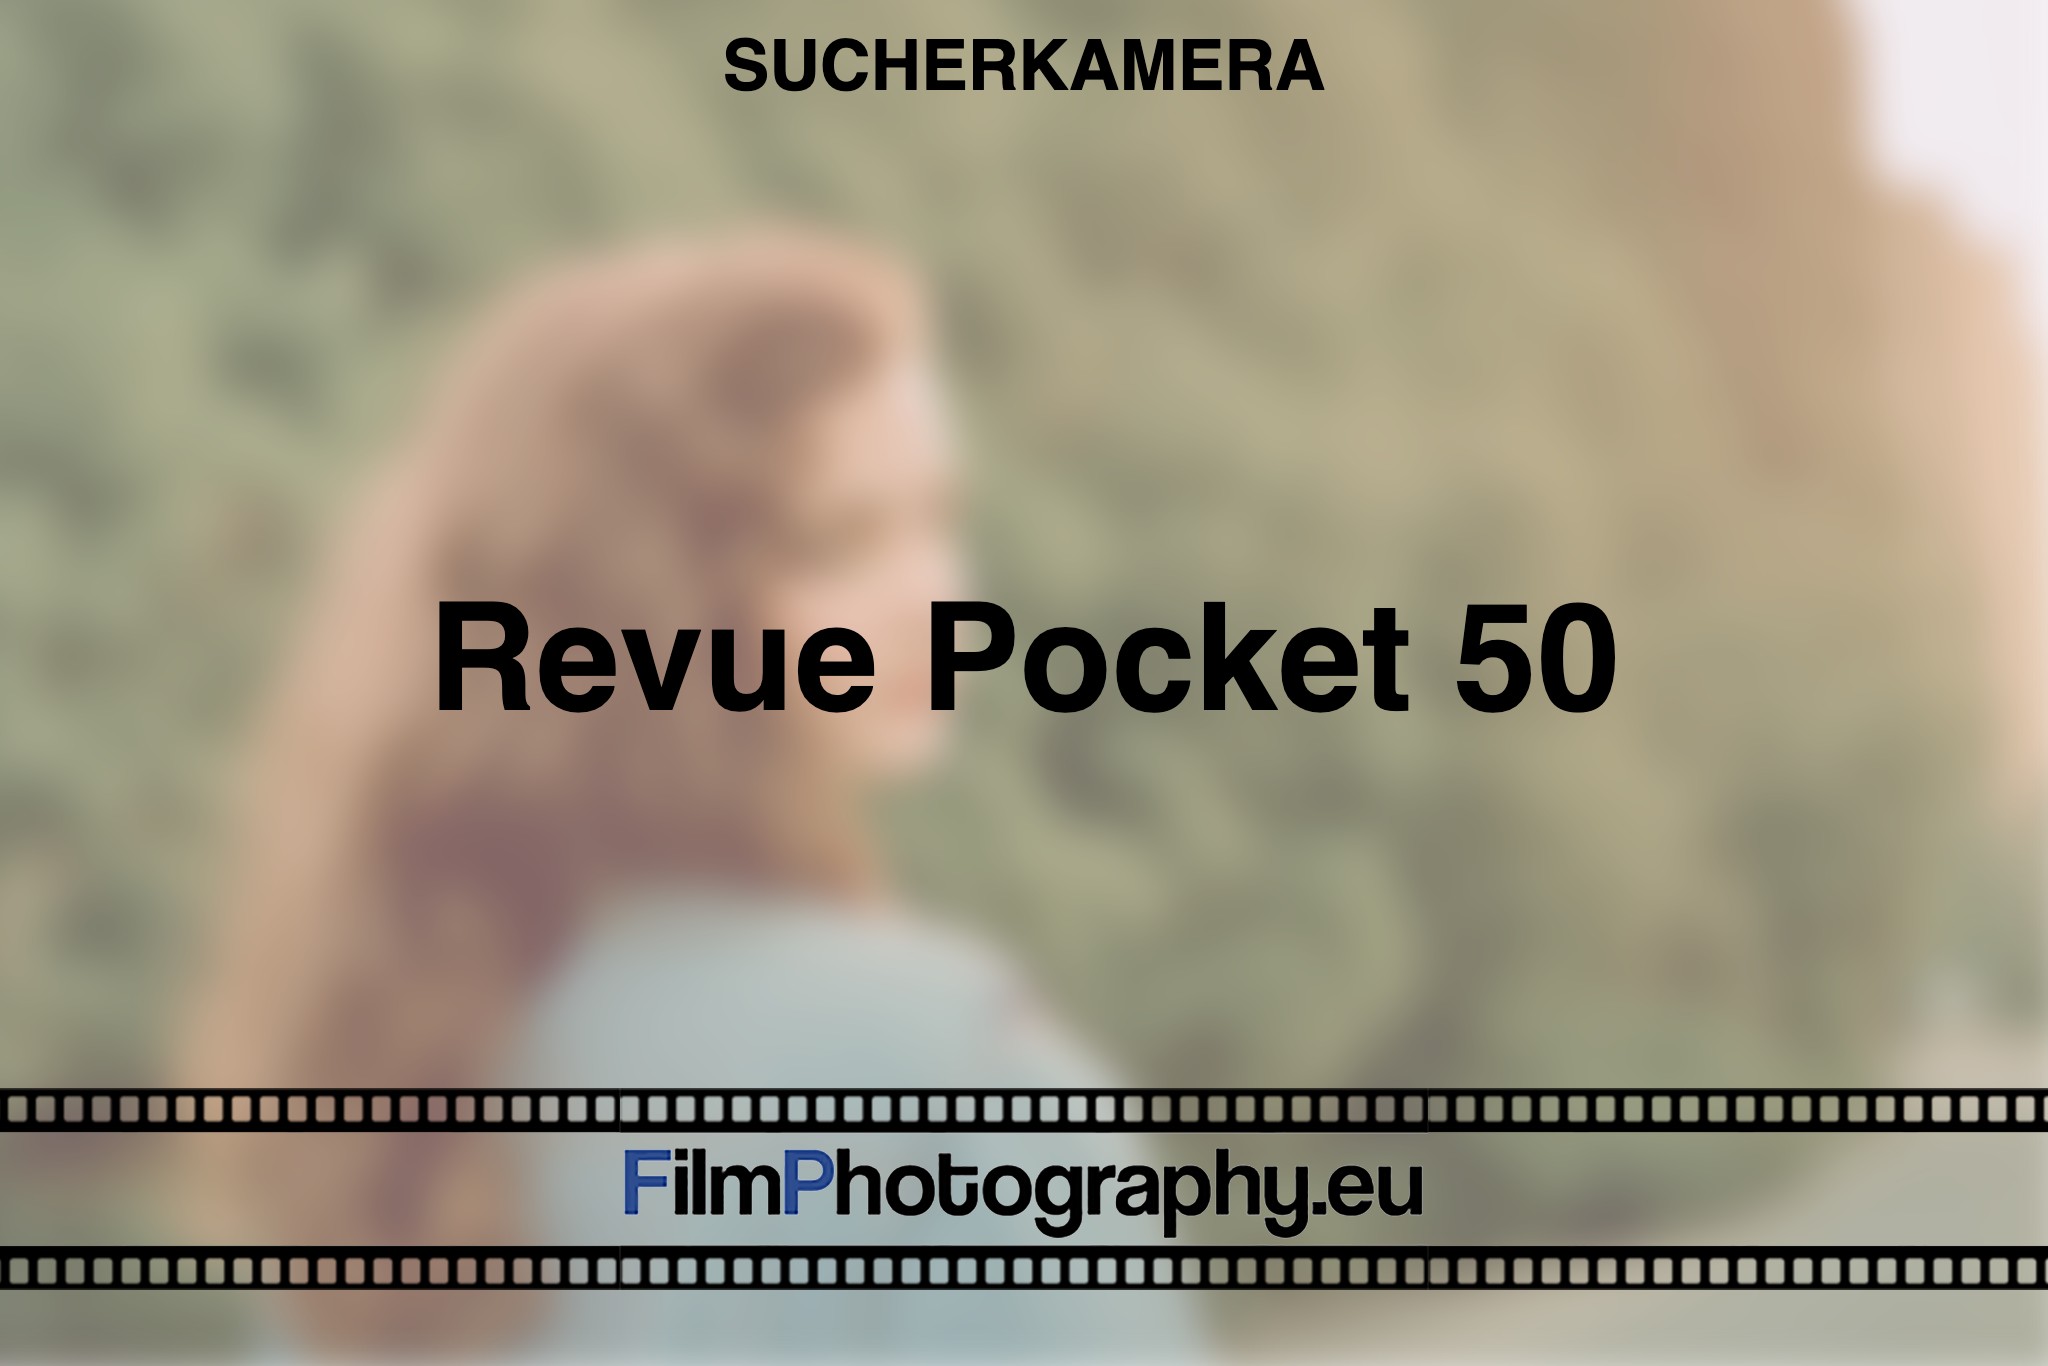 revue-pocket-50-sucherkamera-bnv